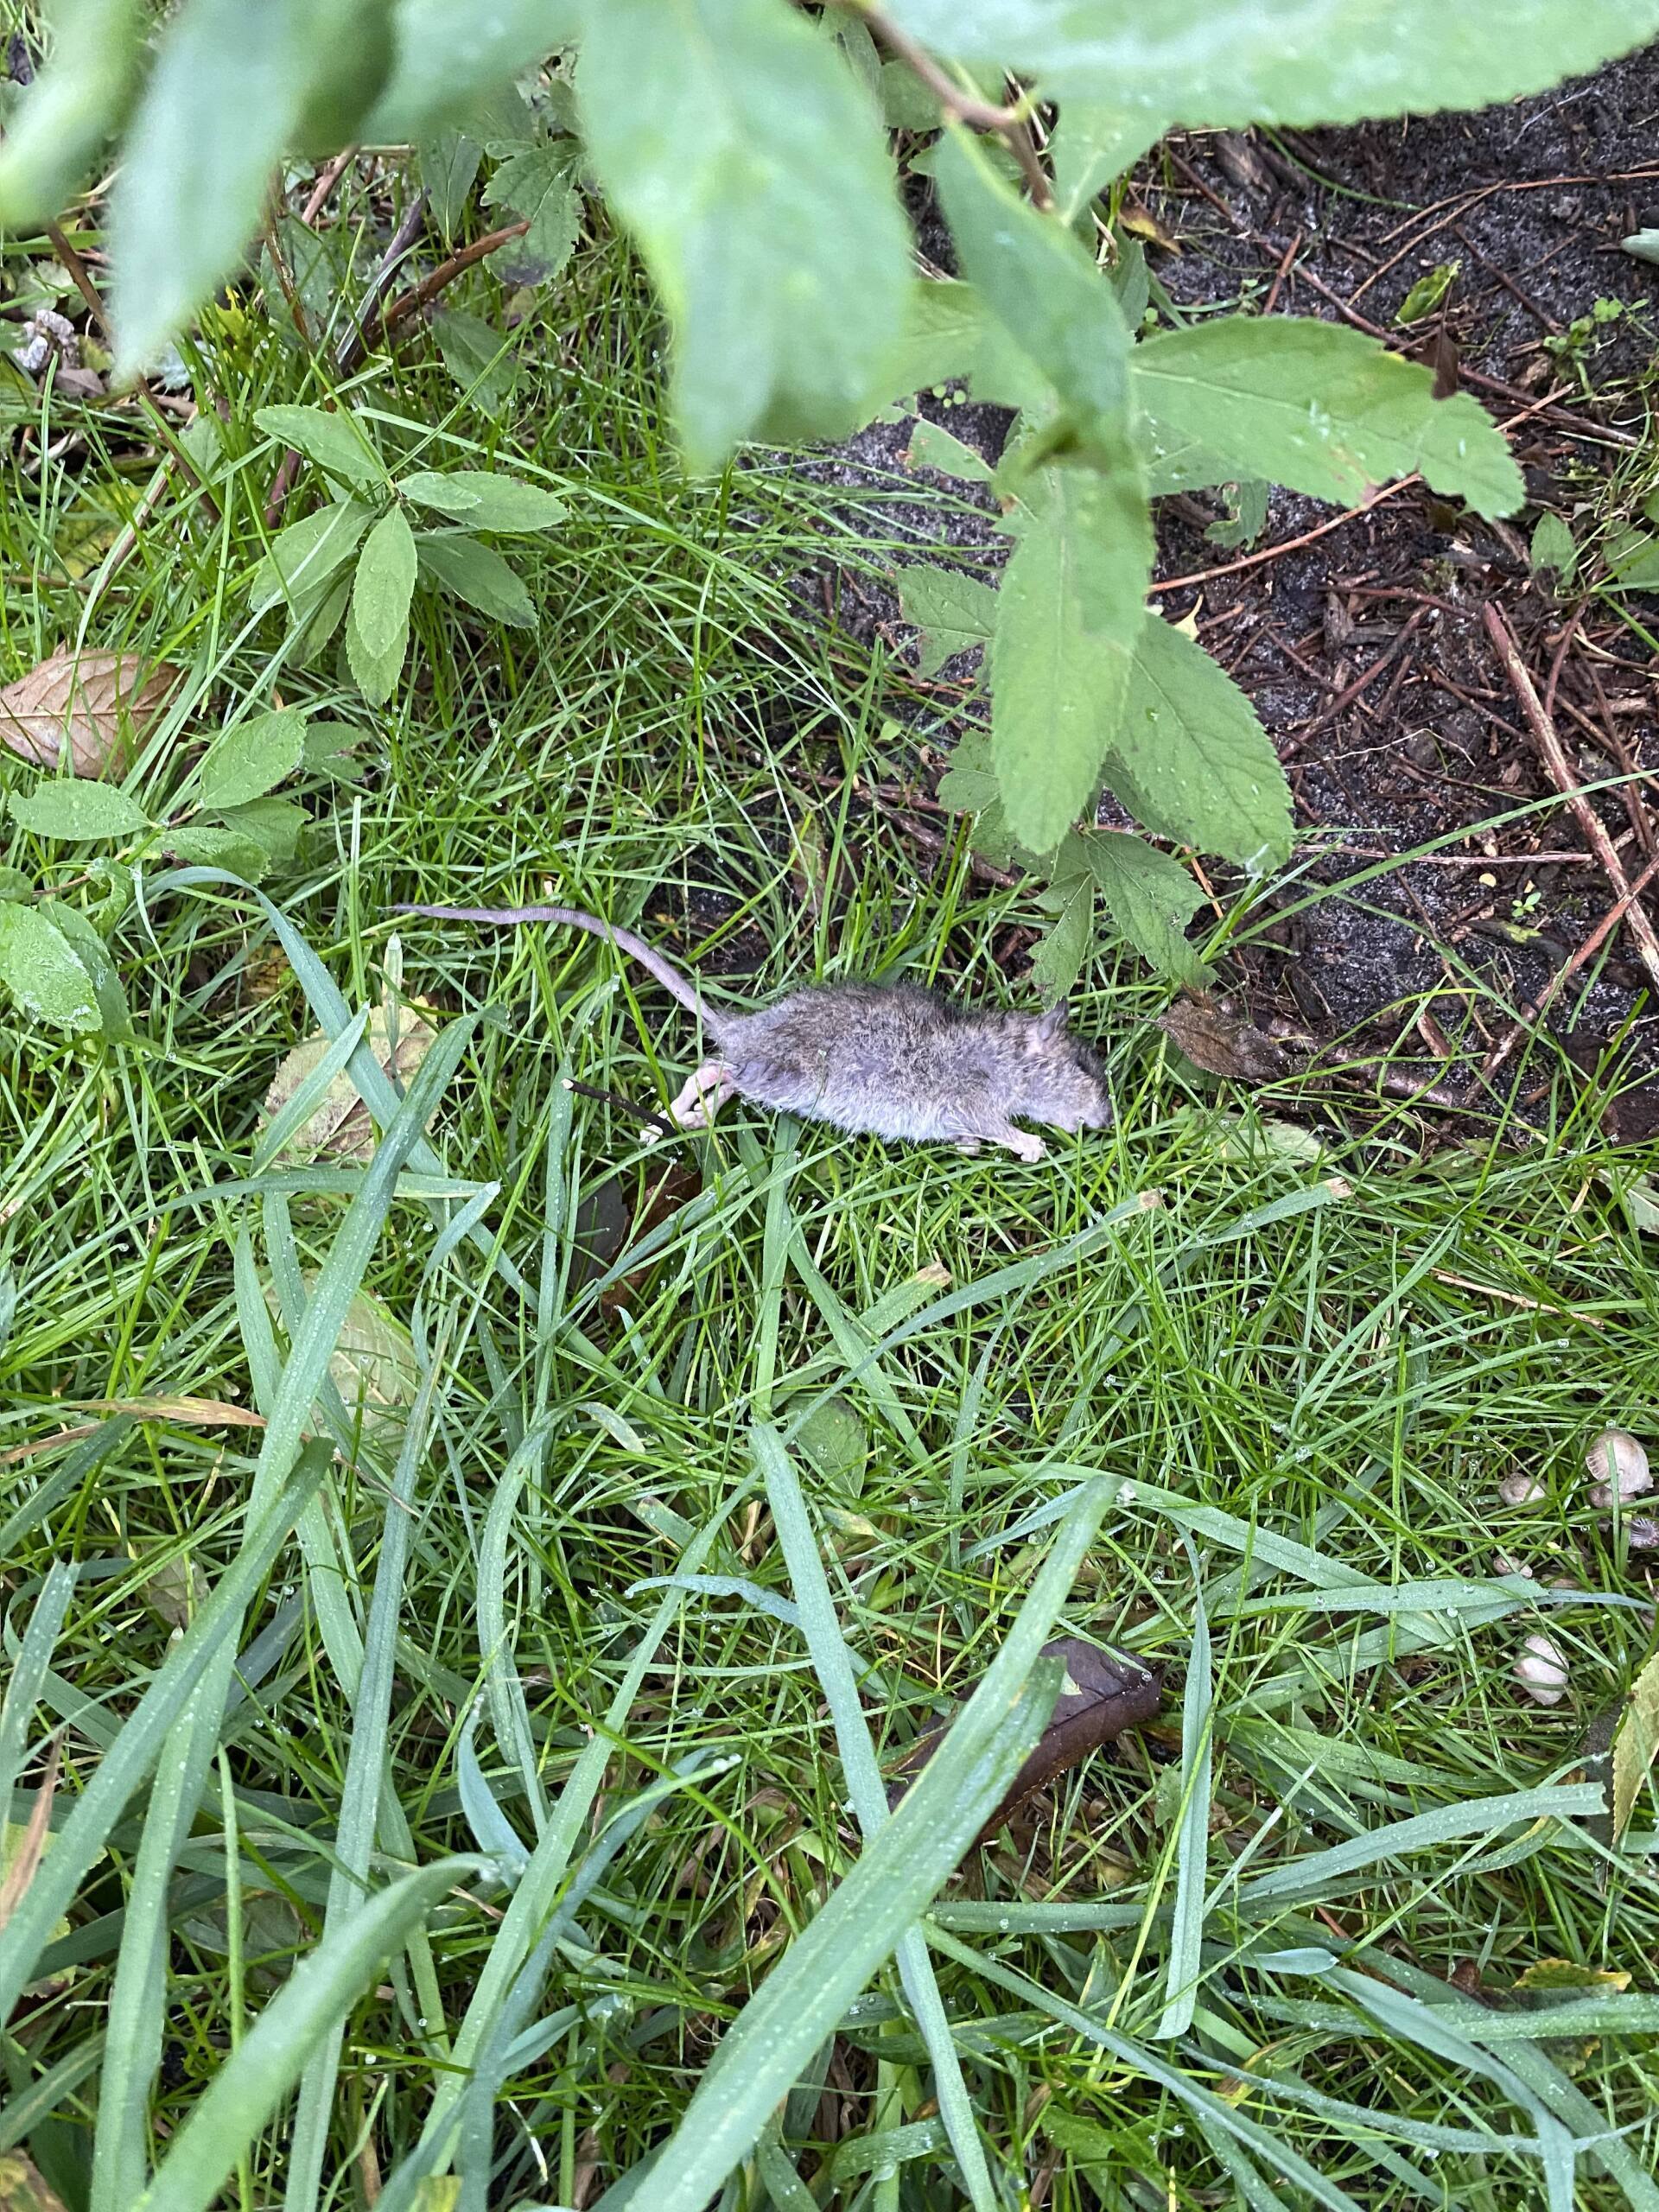 Død rotte udenfor i græs